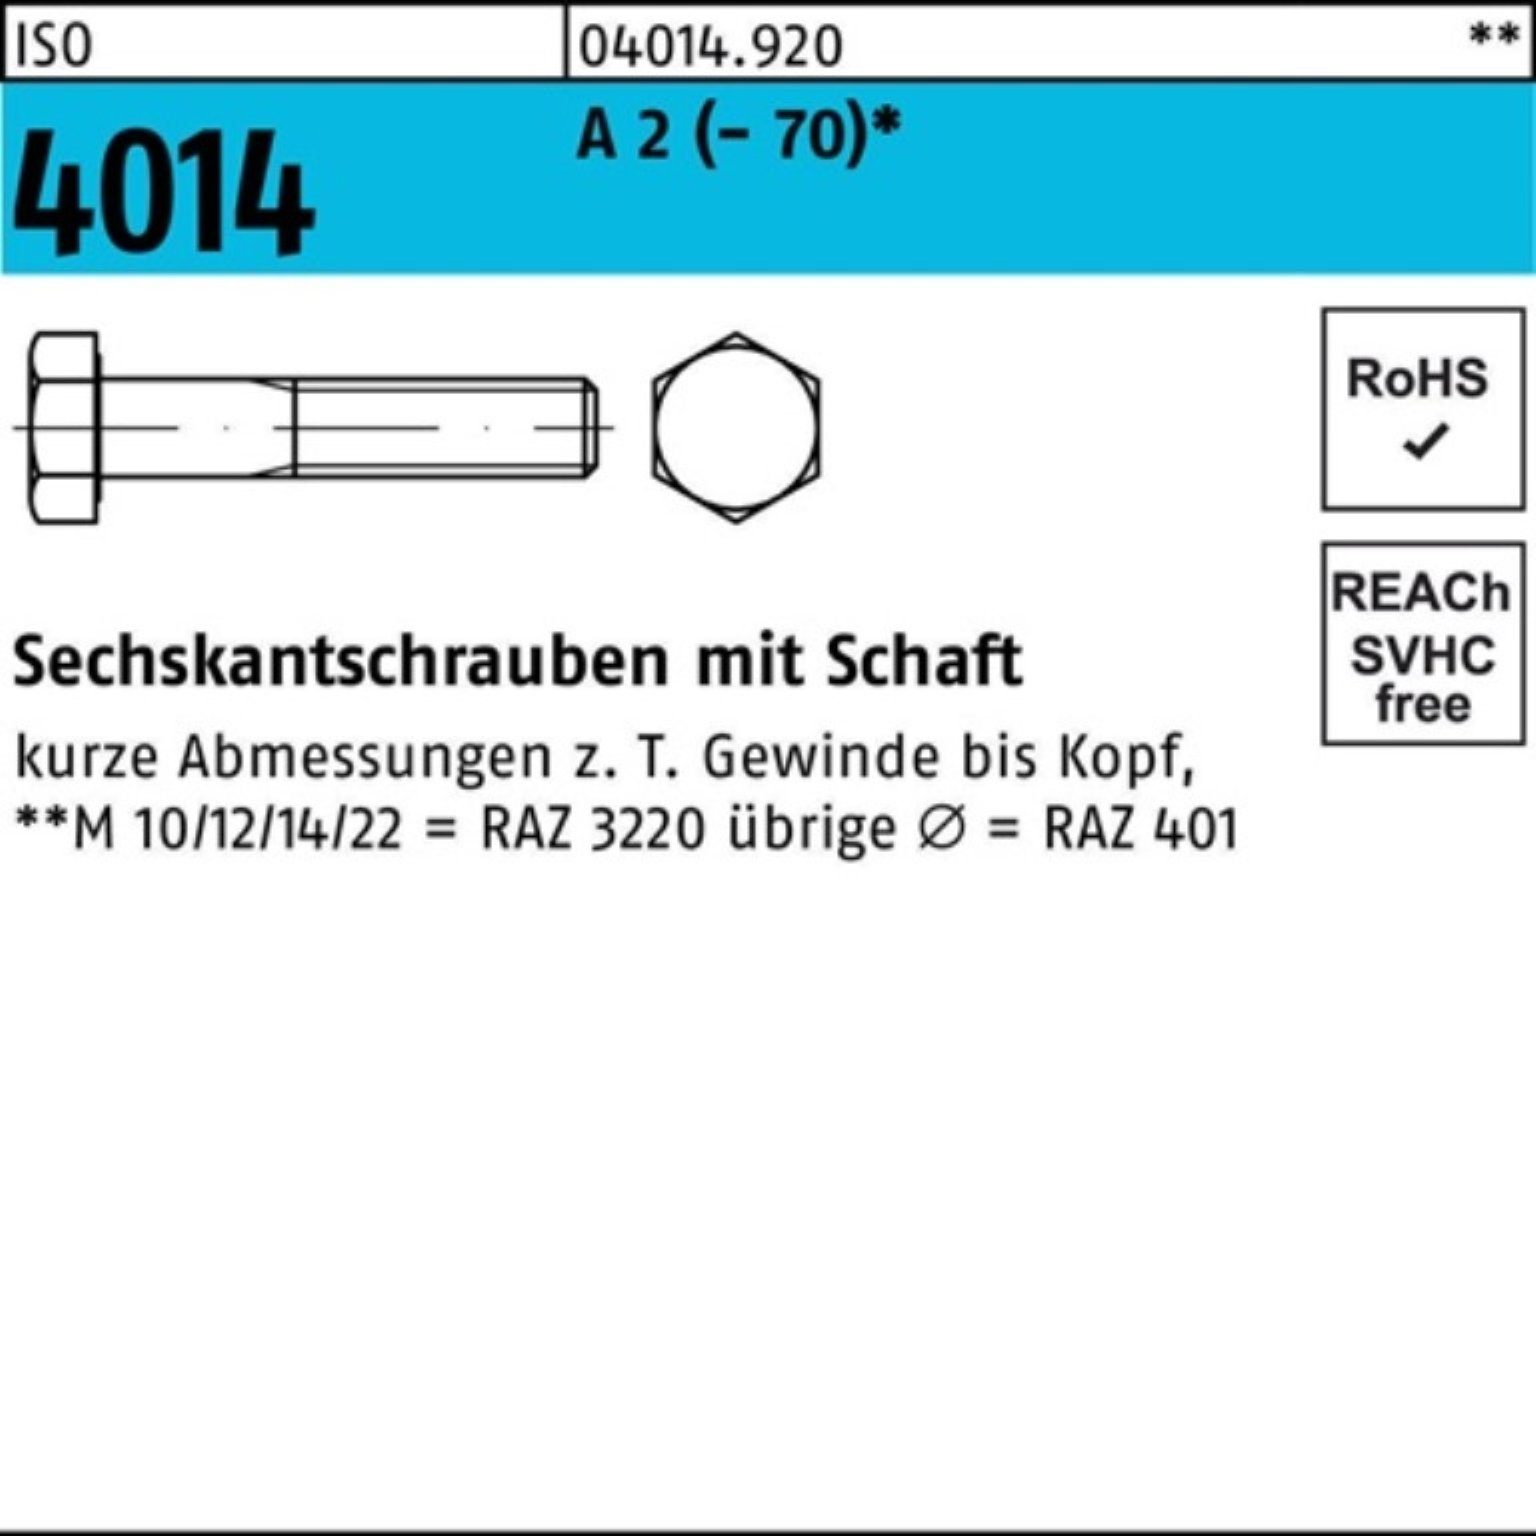 Bufab Sechskantschraube 100er Pack Sechskantschraube ISO 4014 Schaft M10x 85 A 2 (70) 50 St